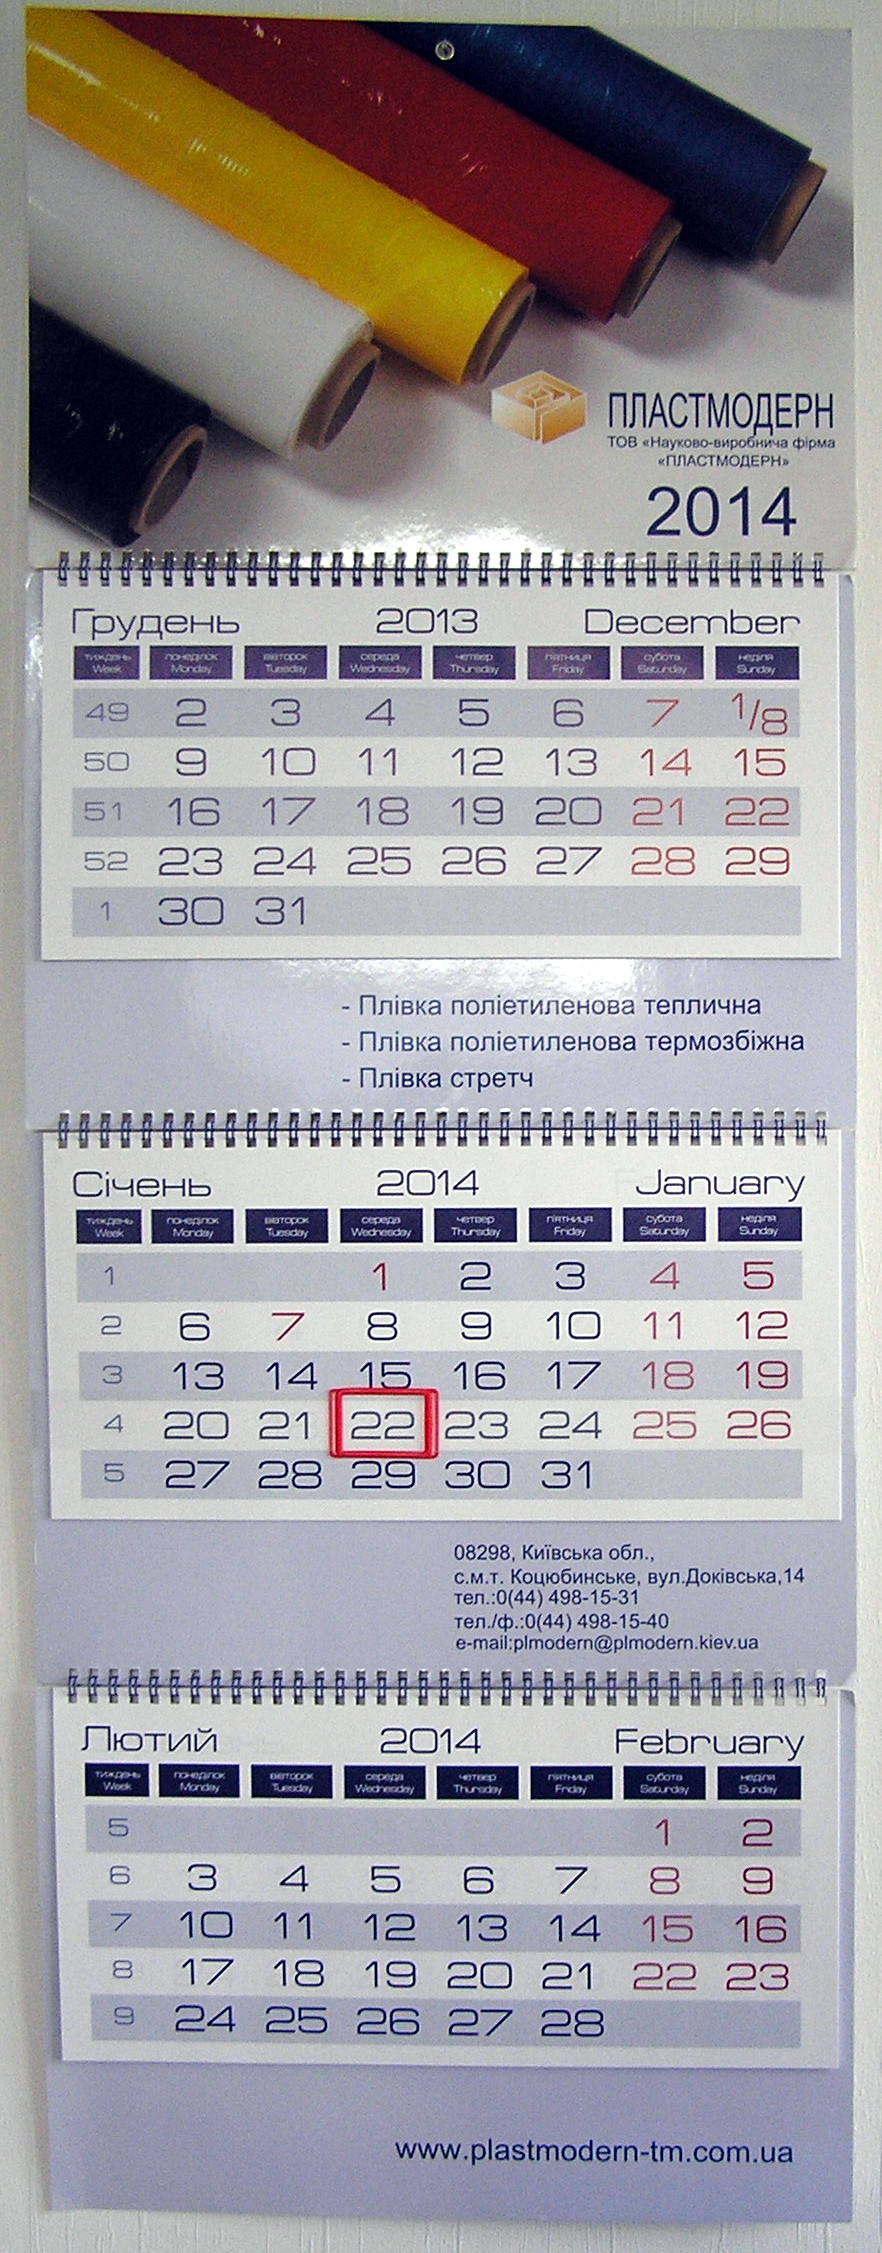 Друк квартальних календарів «Iveco». Поліграфія друкарні Макрос, виготовлення квартальних календарів, спецификация 966992-1